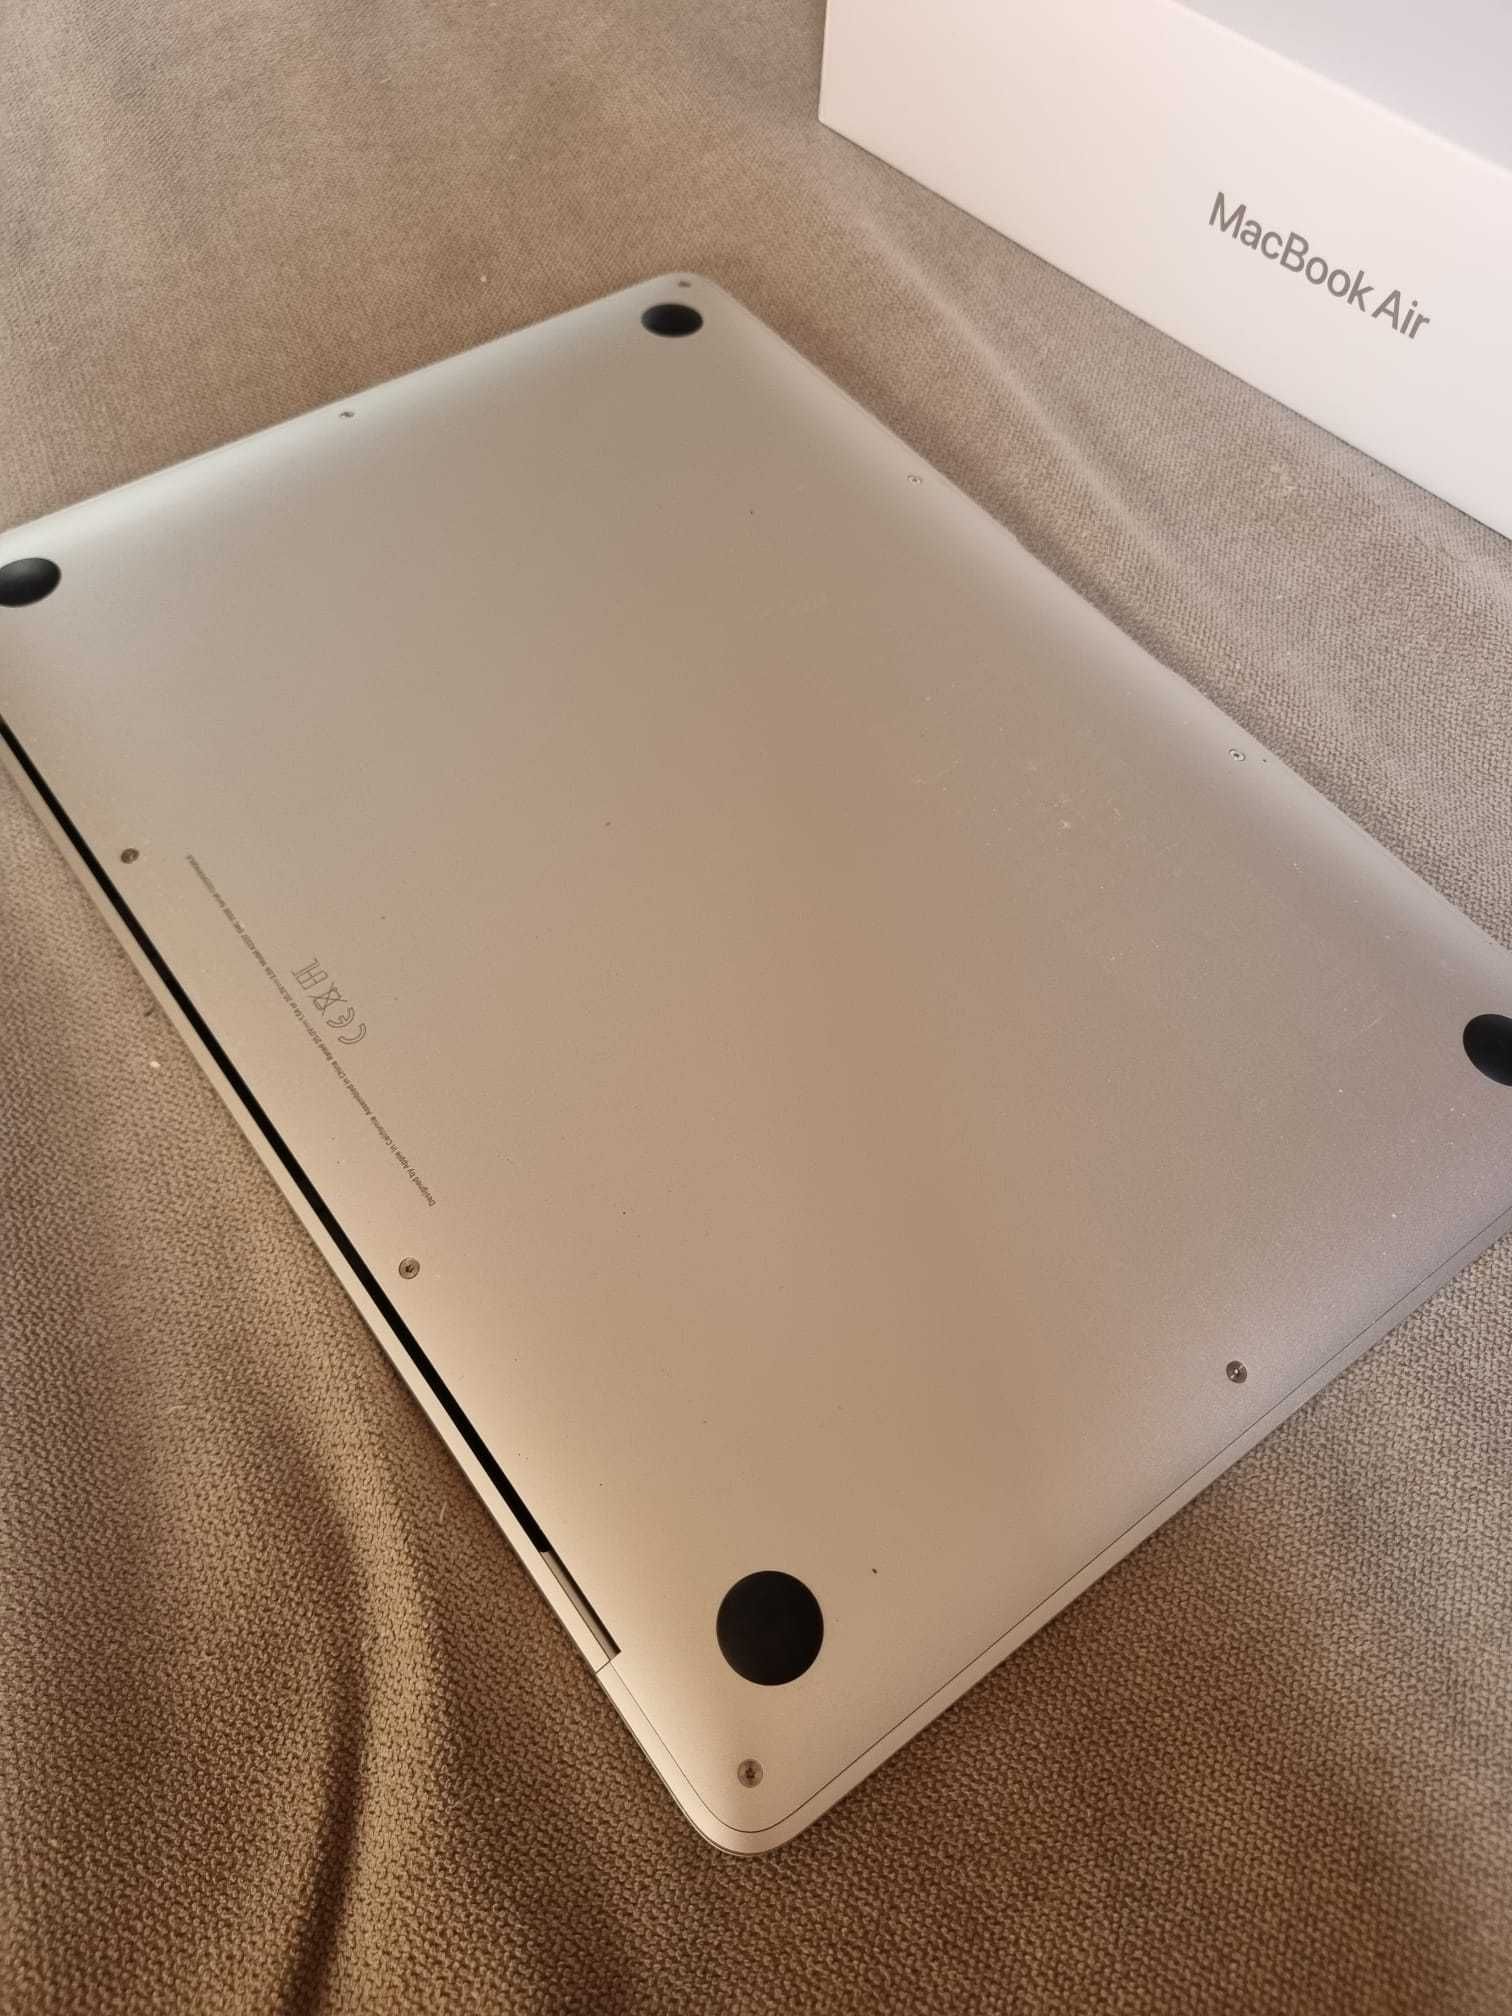 Macbook Air 13 - como novo